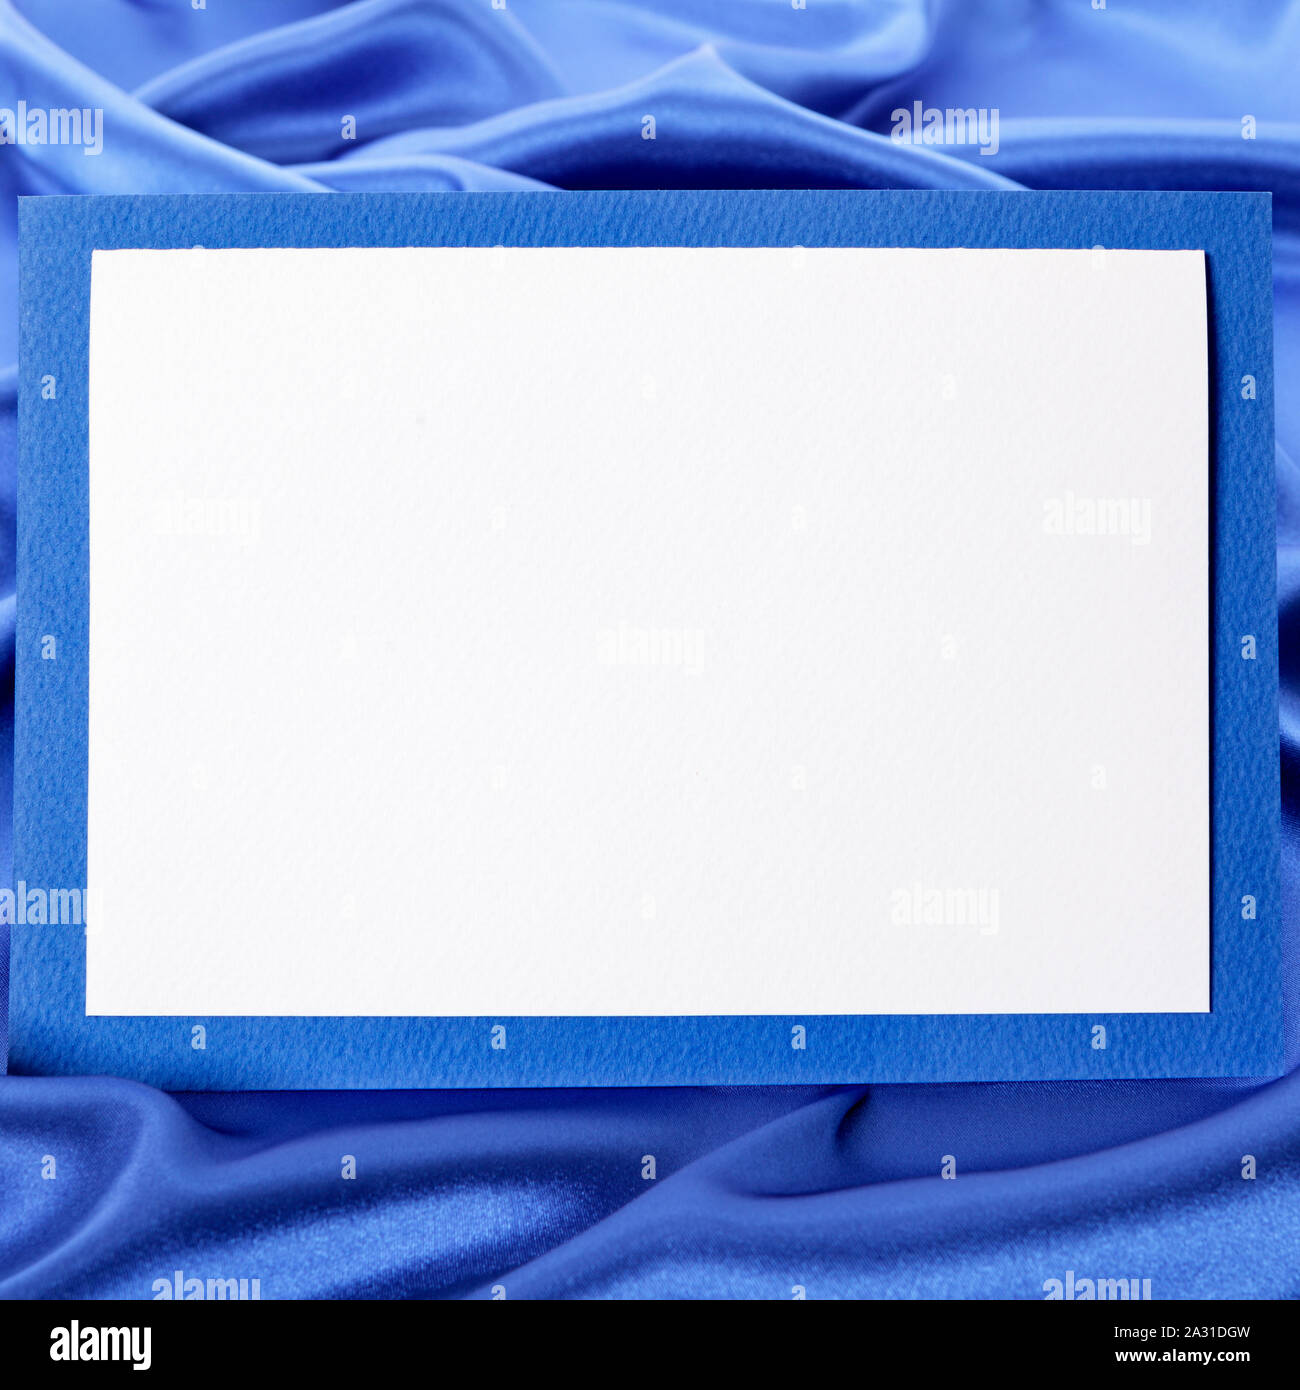 Leere Grußkarte oder Einladung mit blauem Satin Hintergrund Kopie Raum Stockfoto